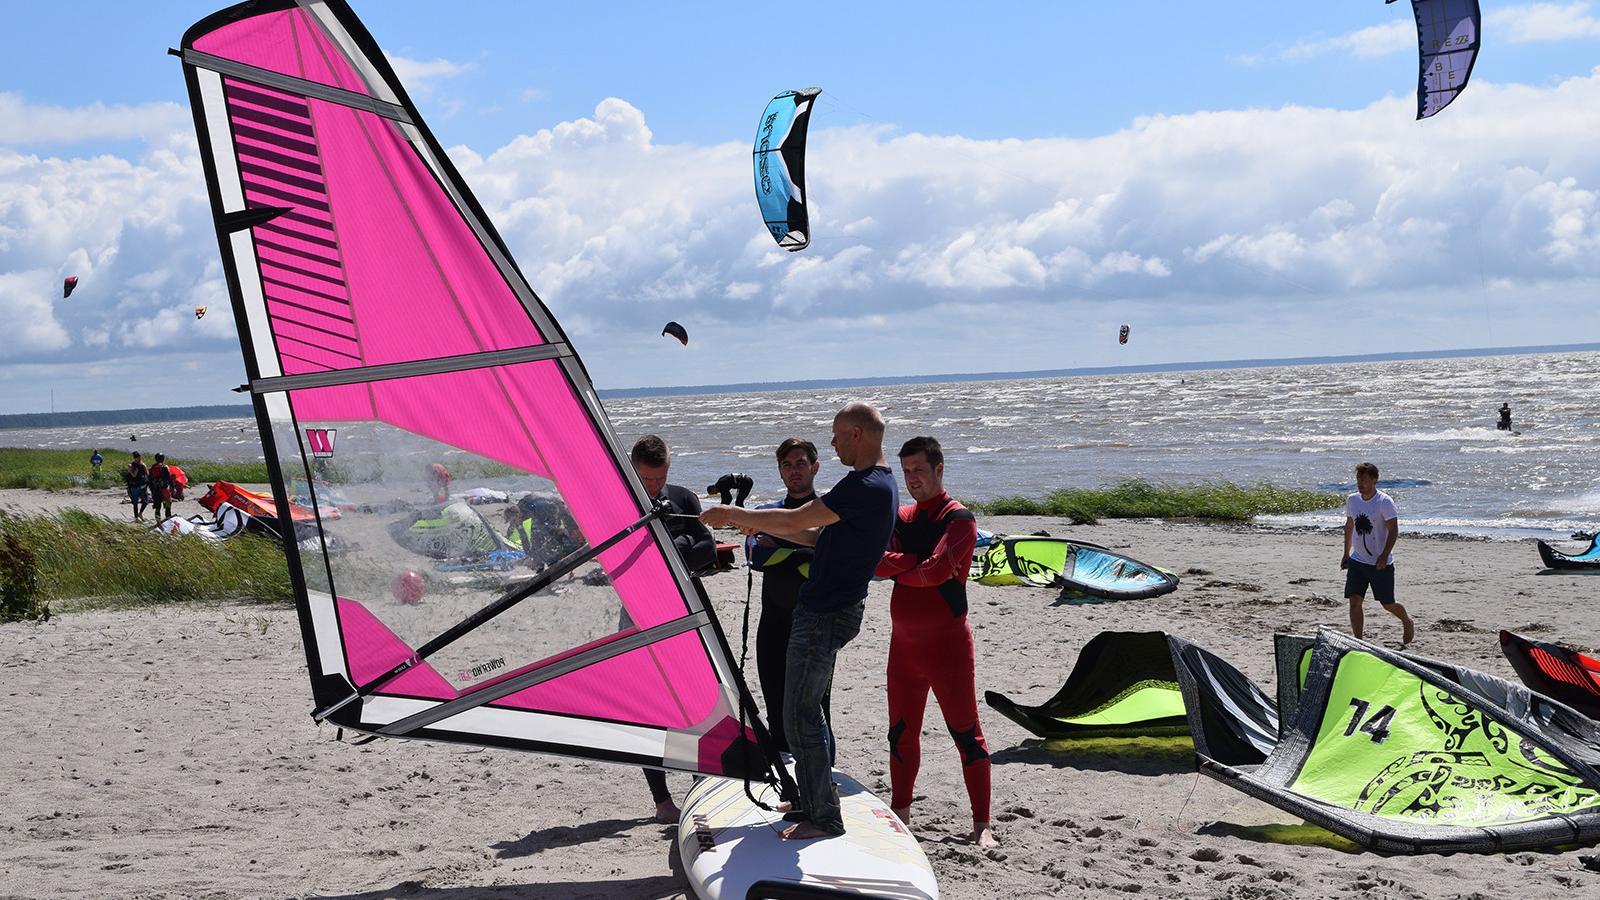 Аренда виндсерфа и обучение на Пярнуском пляже от Pärnu Surf